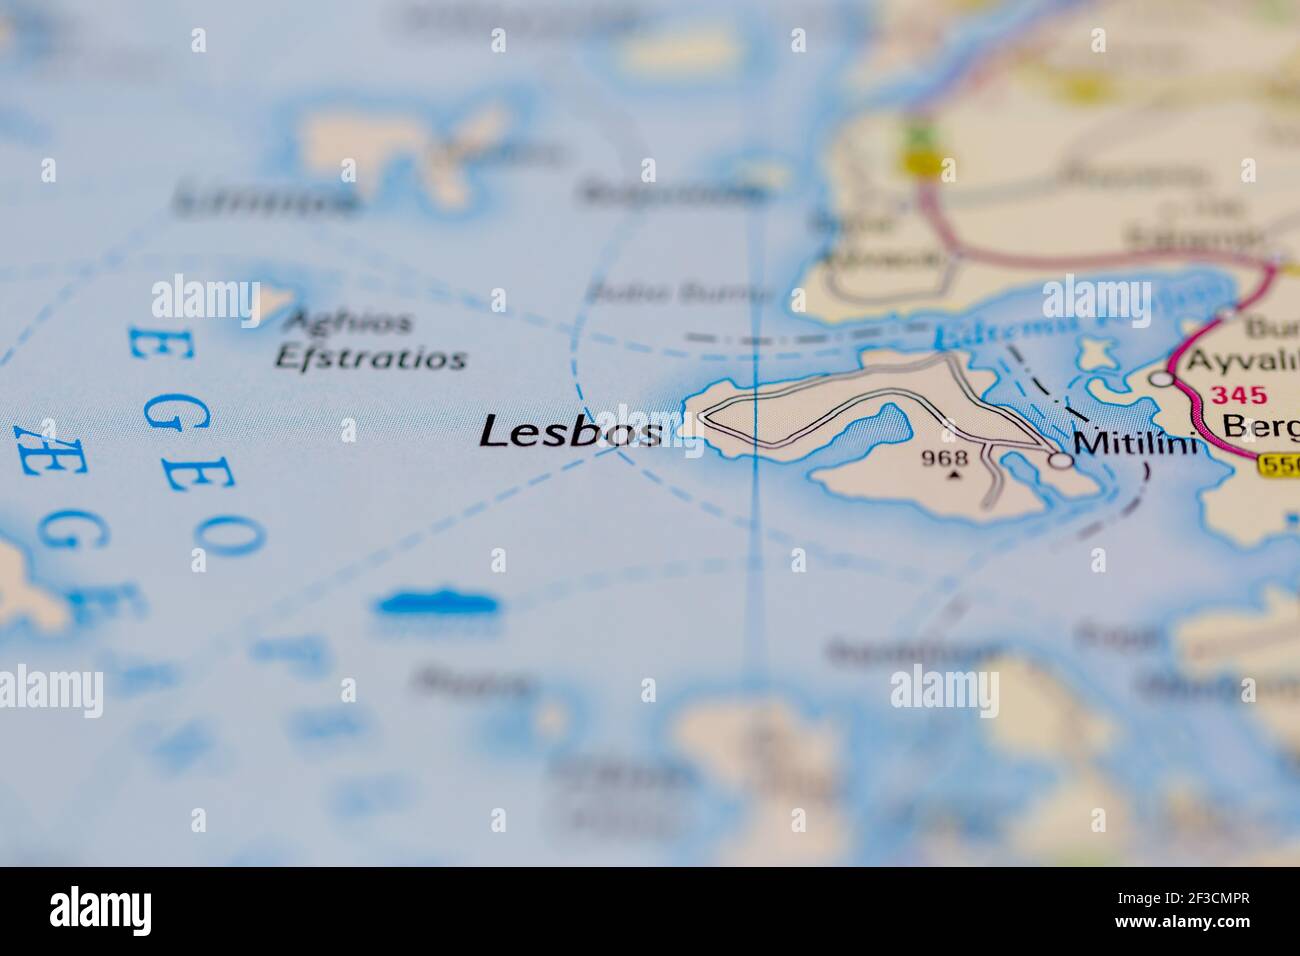 Les Lesbos sont affichés sur une carte géographique ou une carte routière Banque D'Images